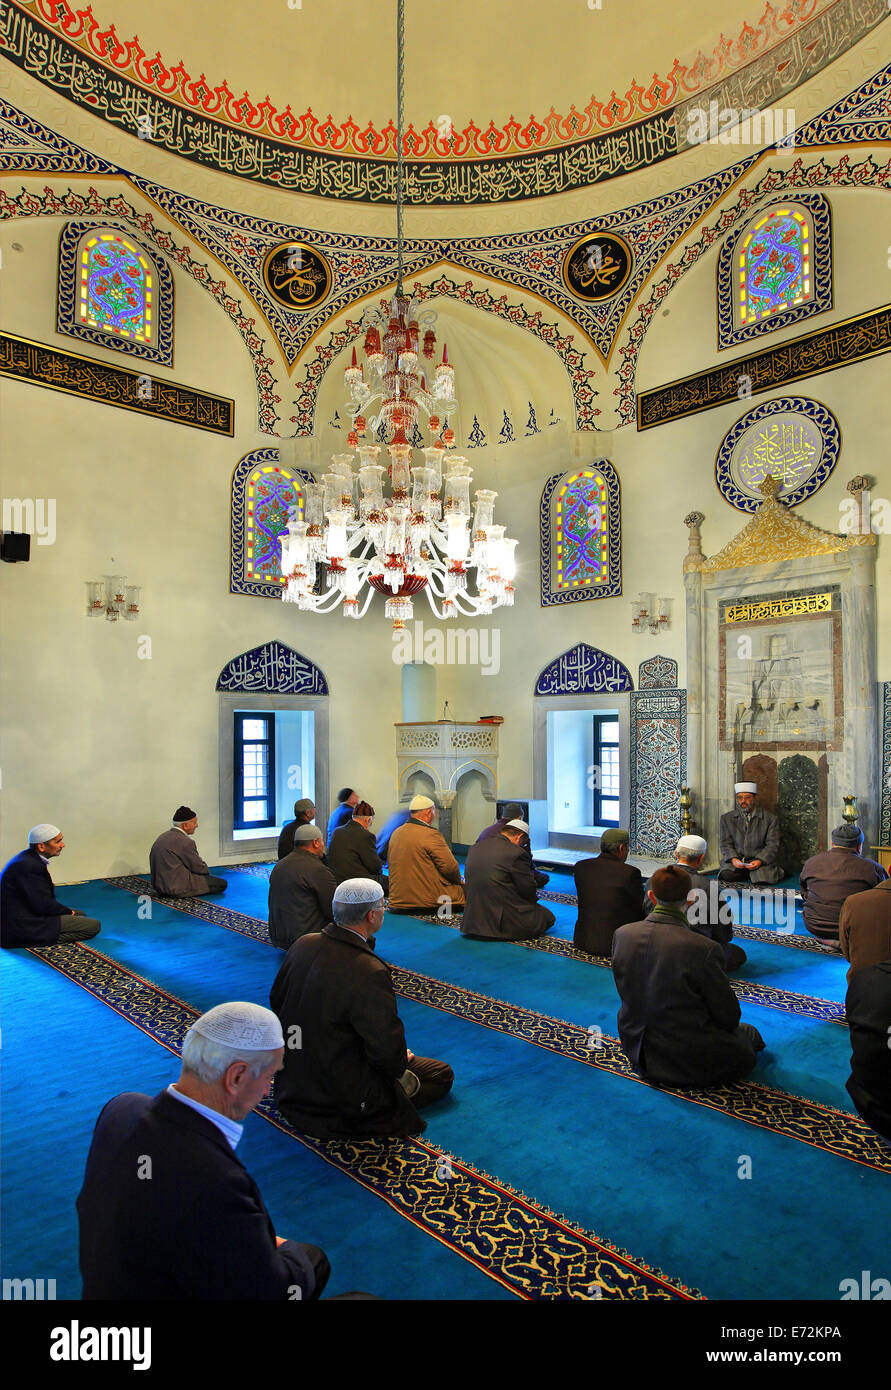 Les musulmans grecs priant l'intérieur Yeni Camii (nouvelle mosquée signifie 'Il'), Komotini, ville préfecture de Rodopi, Thrace, Grèce Banque D'Images